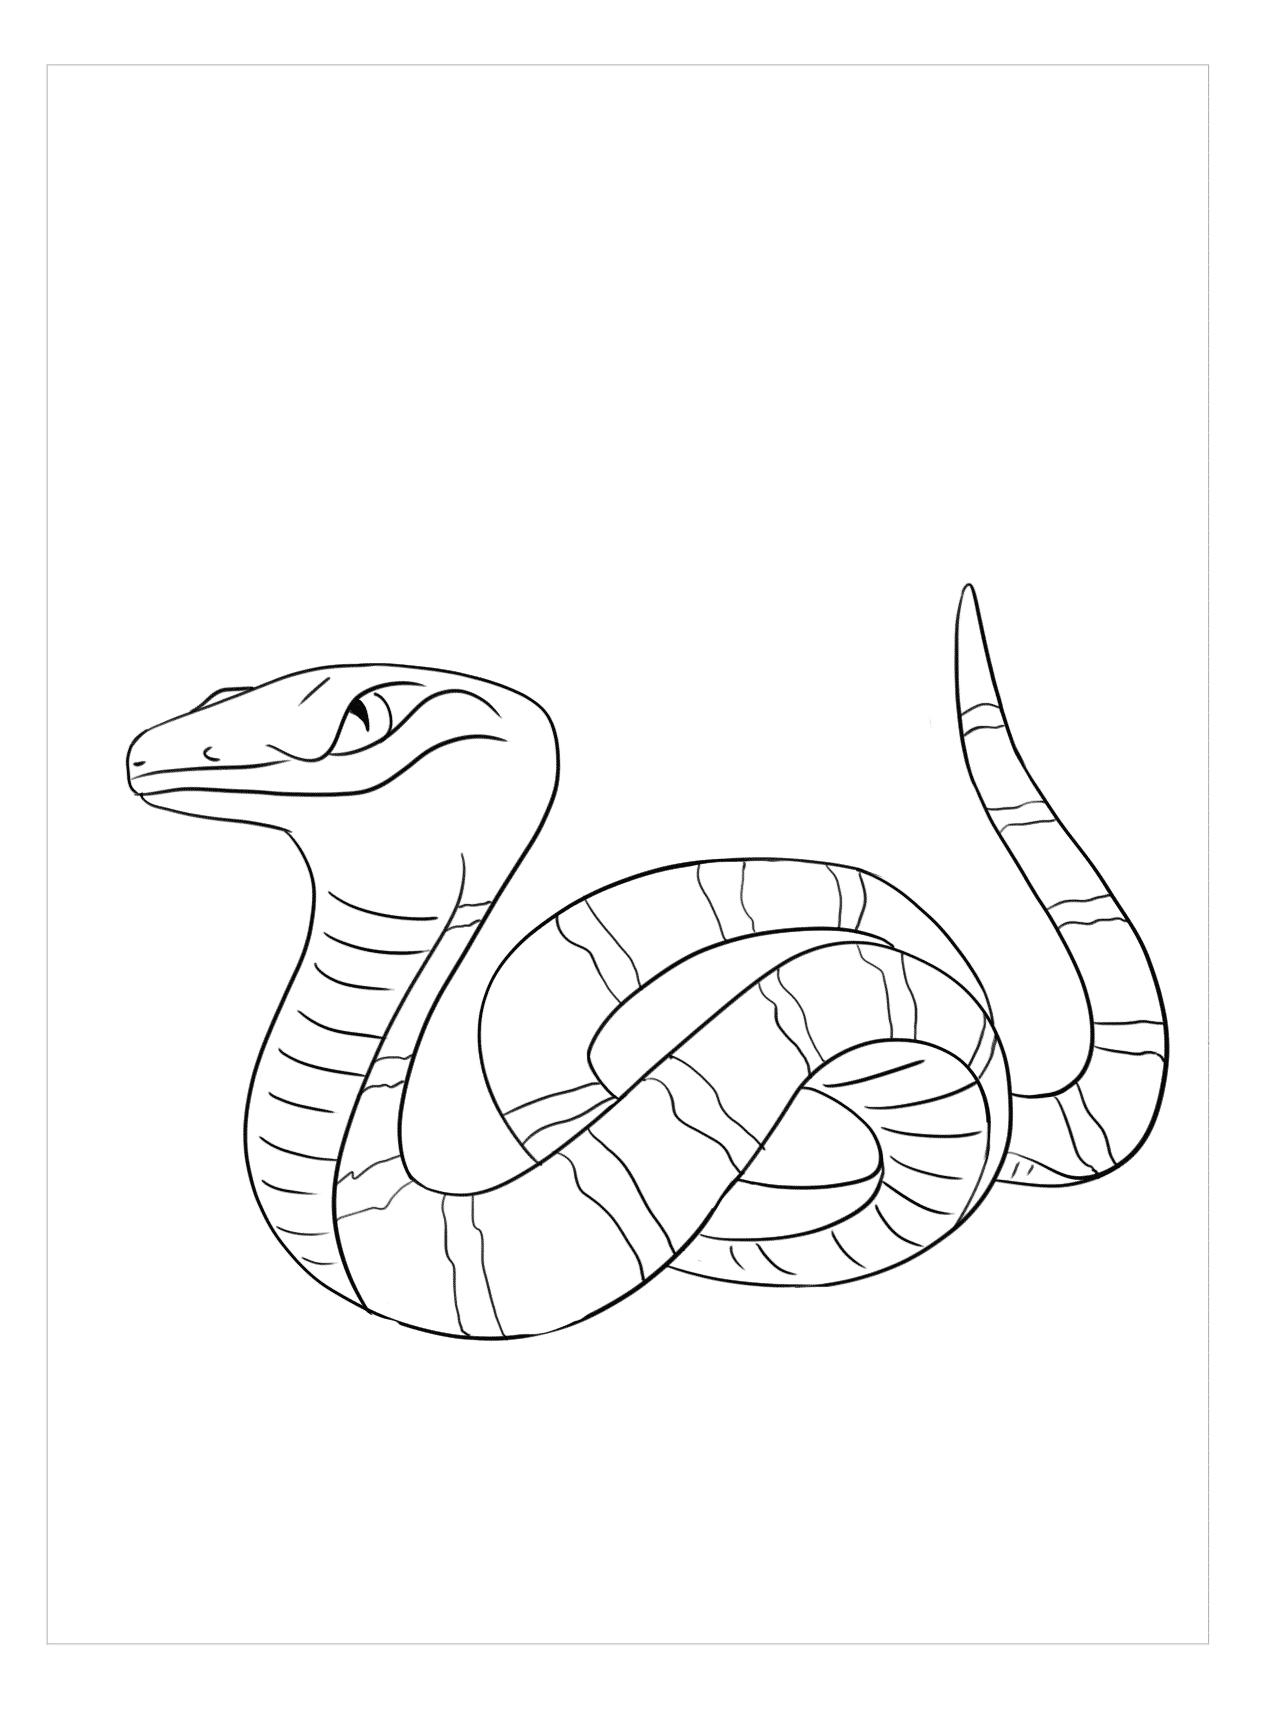 Vẽ rắn thêm chân quả là ngớ ngẩn nhưng vẽ rắn thêm tay lại hay biết mấy